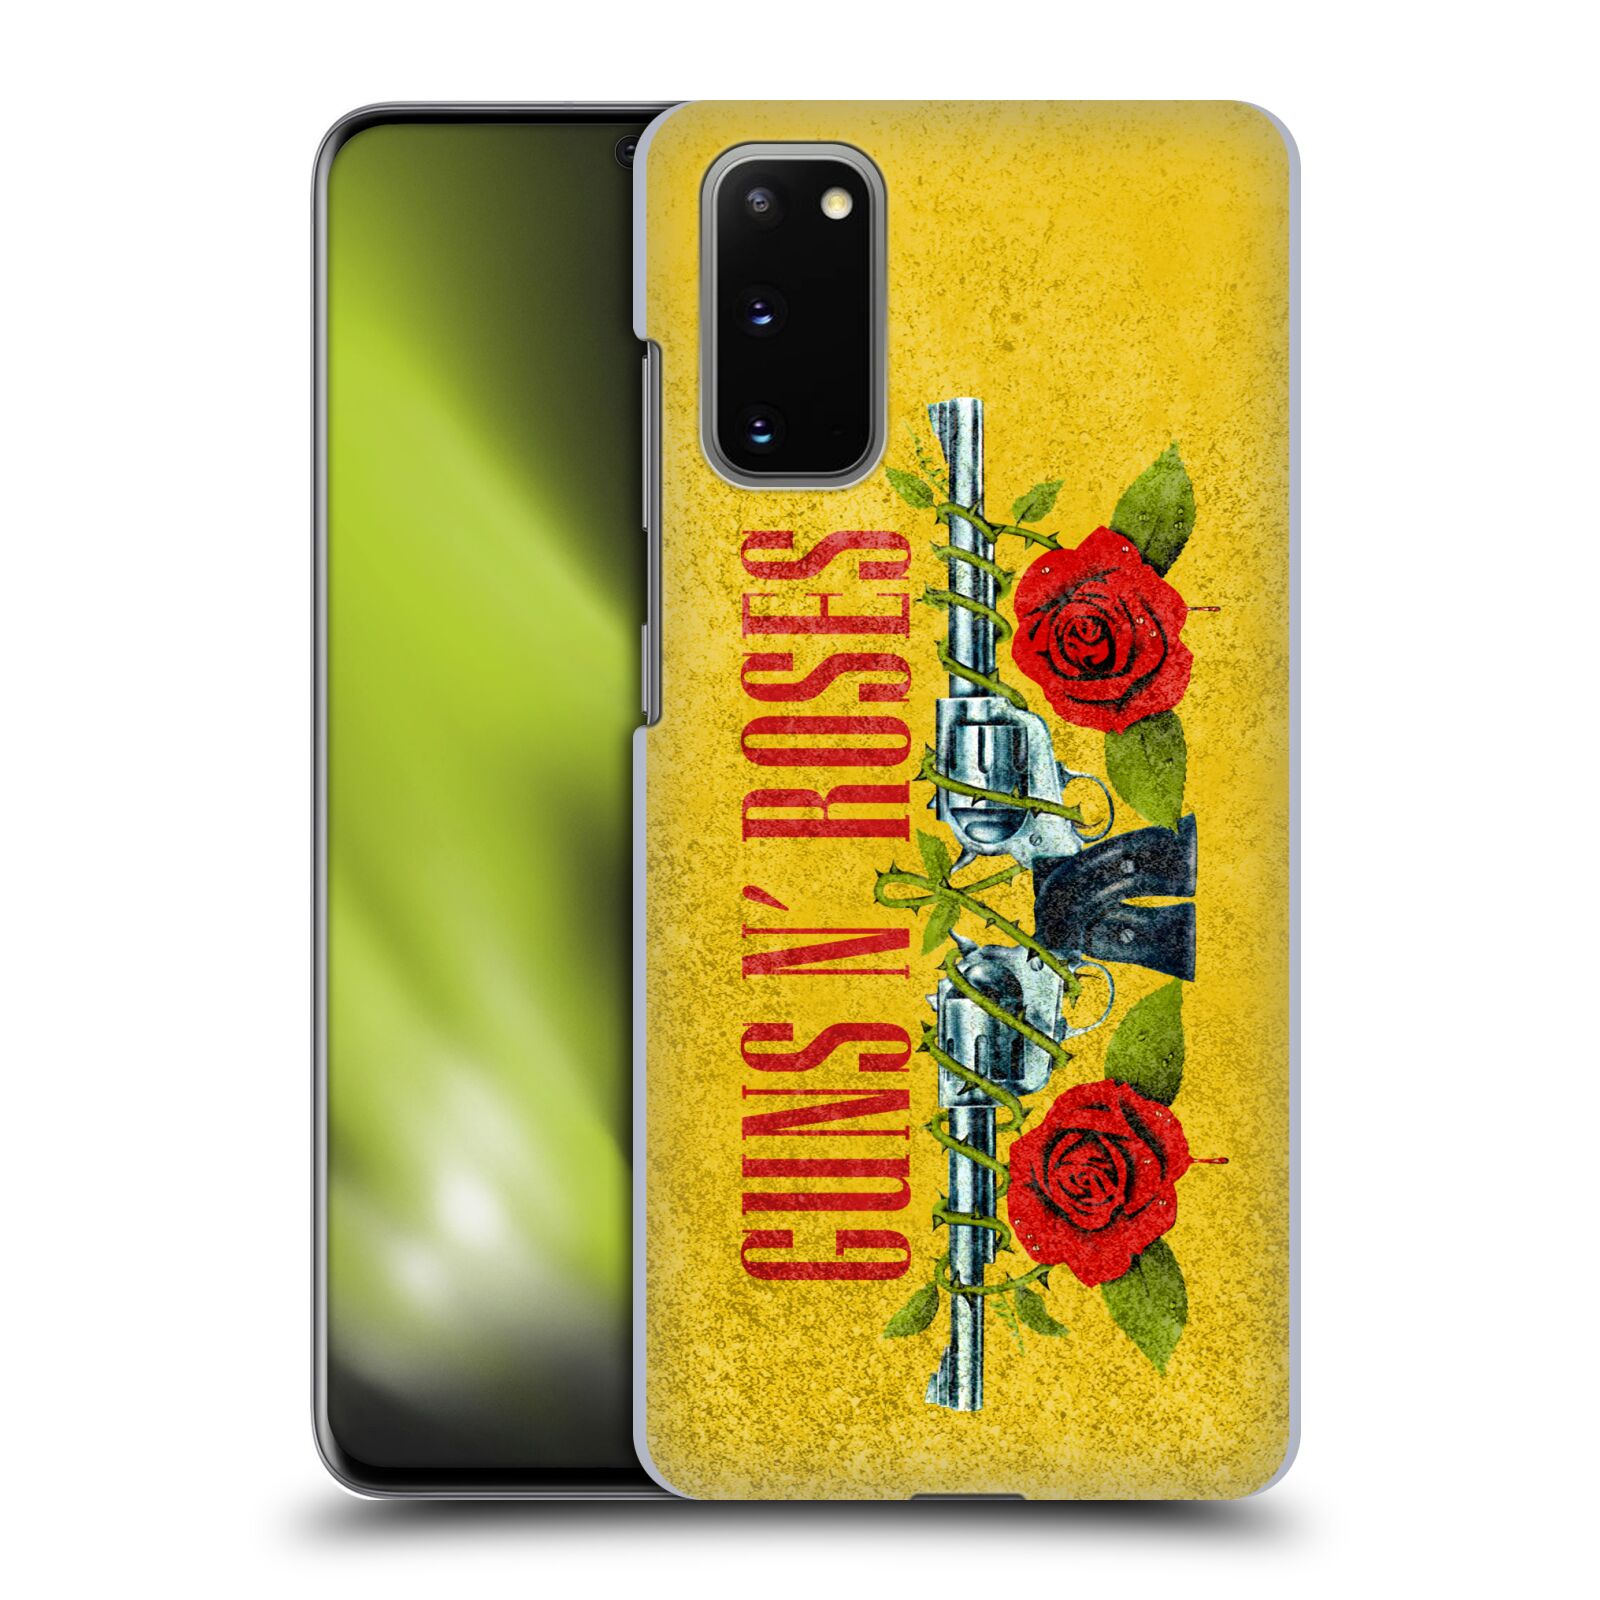 Pouzdro na mobil Samsung Galaxy S20 - HEAD CASE - hudební skupina Guns N Roses pistole a růže žluté pozadí